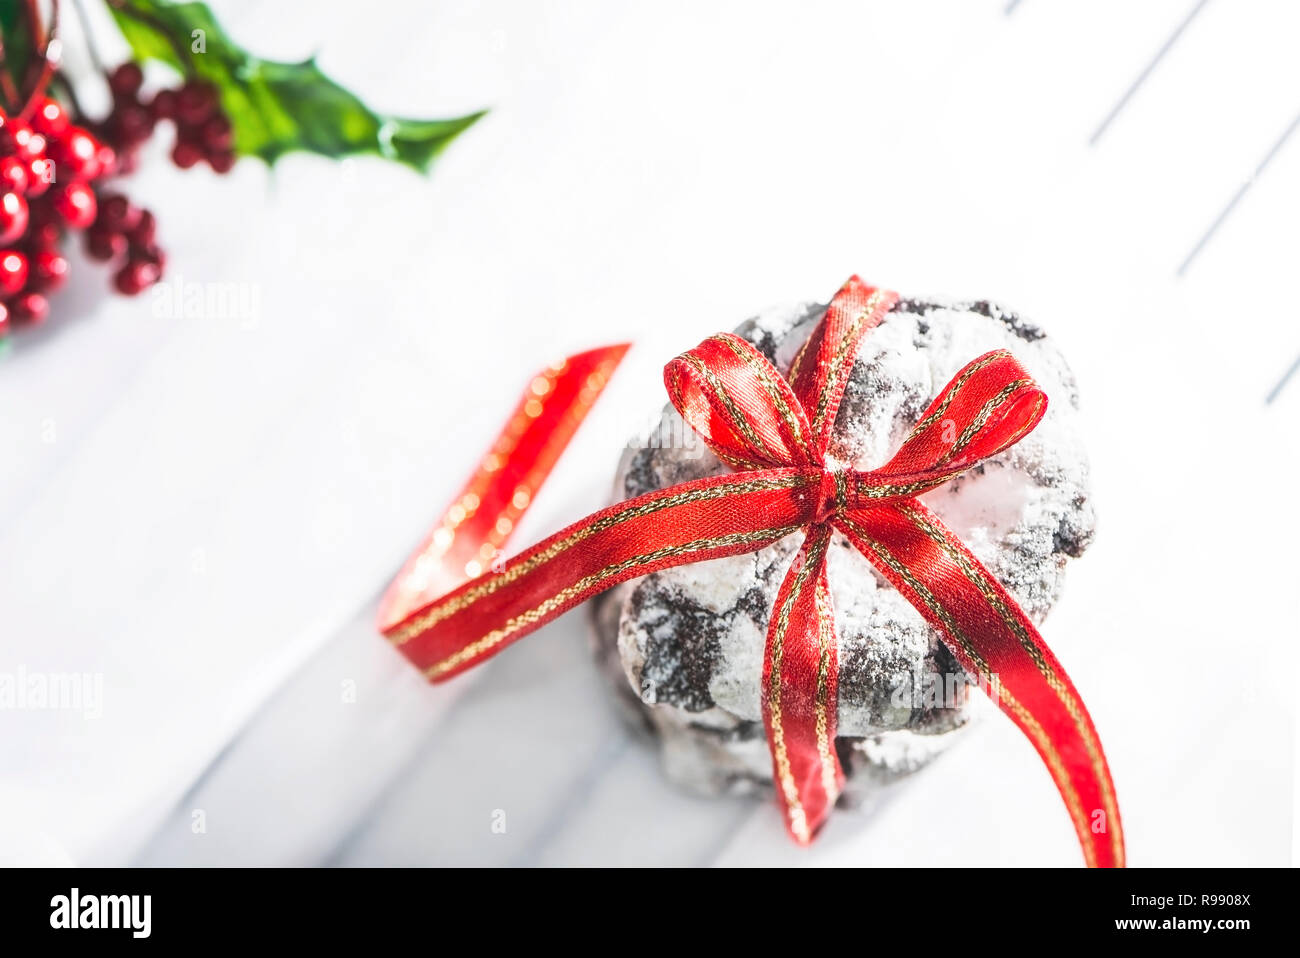 Yummy chocolate crinkle biscuits avec ruban rouge sur fond blanc du papier sulfurisé, Close up. Maison de vacances photographie concept Banque D'Images